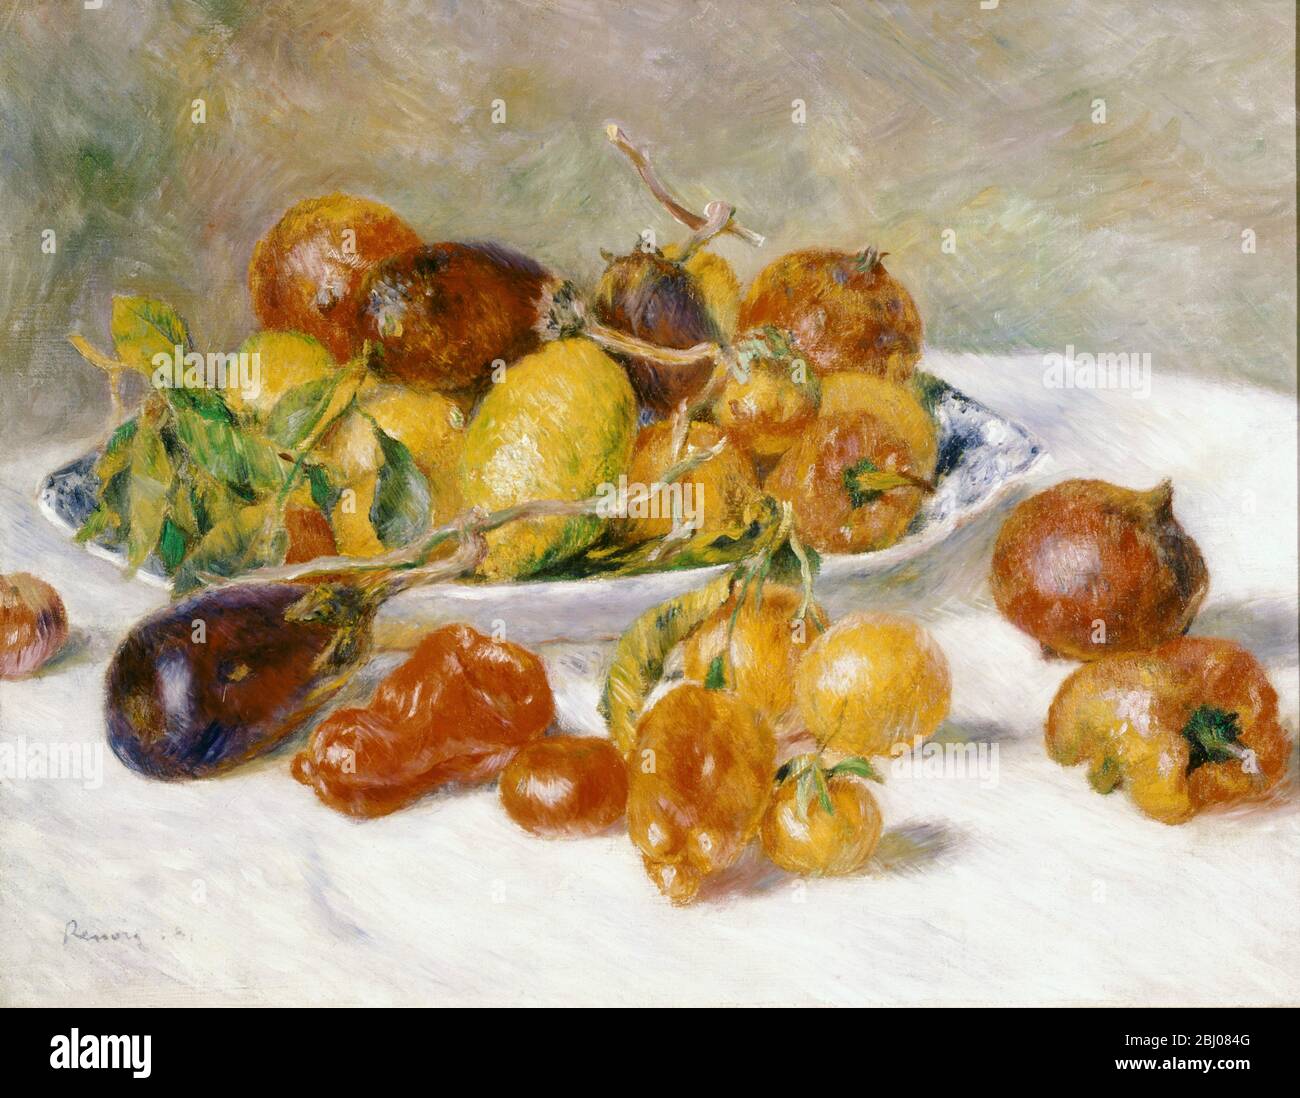 Fruits du Midi - von Pierre Auguste Renoir ( 1841 - 1919 ) - Pierre-Auguste Renoir (25. Februar 1841 - 3. Dezember 1919) war ein französischer Künstler, der im impressionistischen Stil malte. - Stockfoto